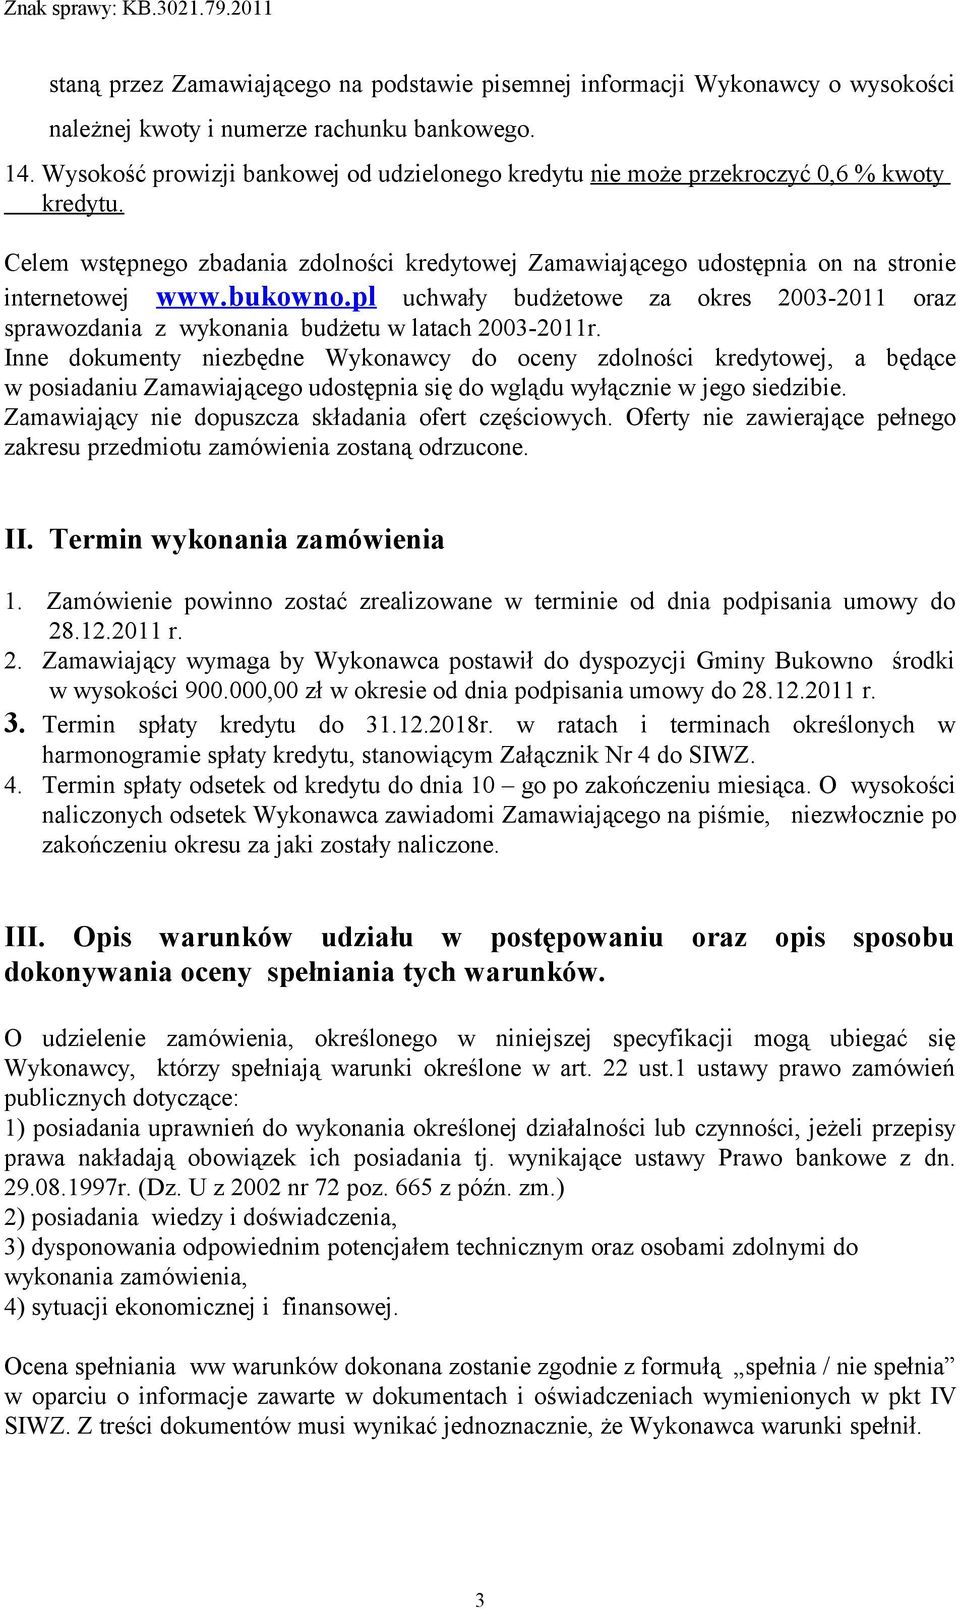 bukowno.pl uchwały budżetowe za okres 2003-2011 oraz sprawozdania z wykonania budżetu w latach 2003-2011r.